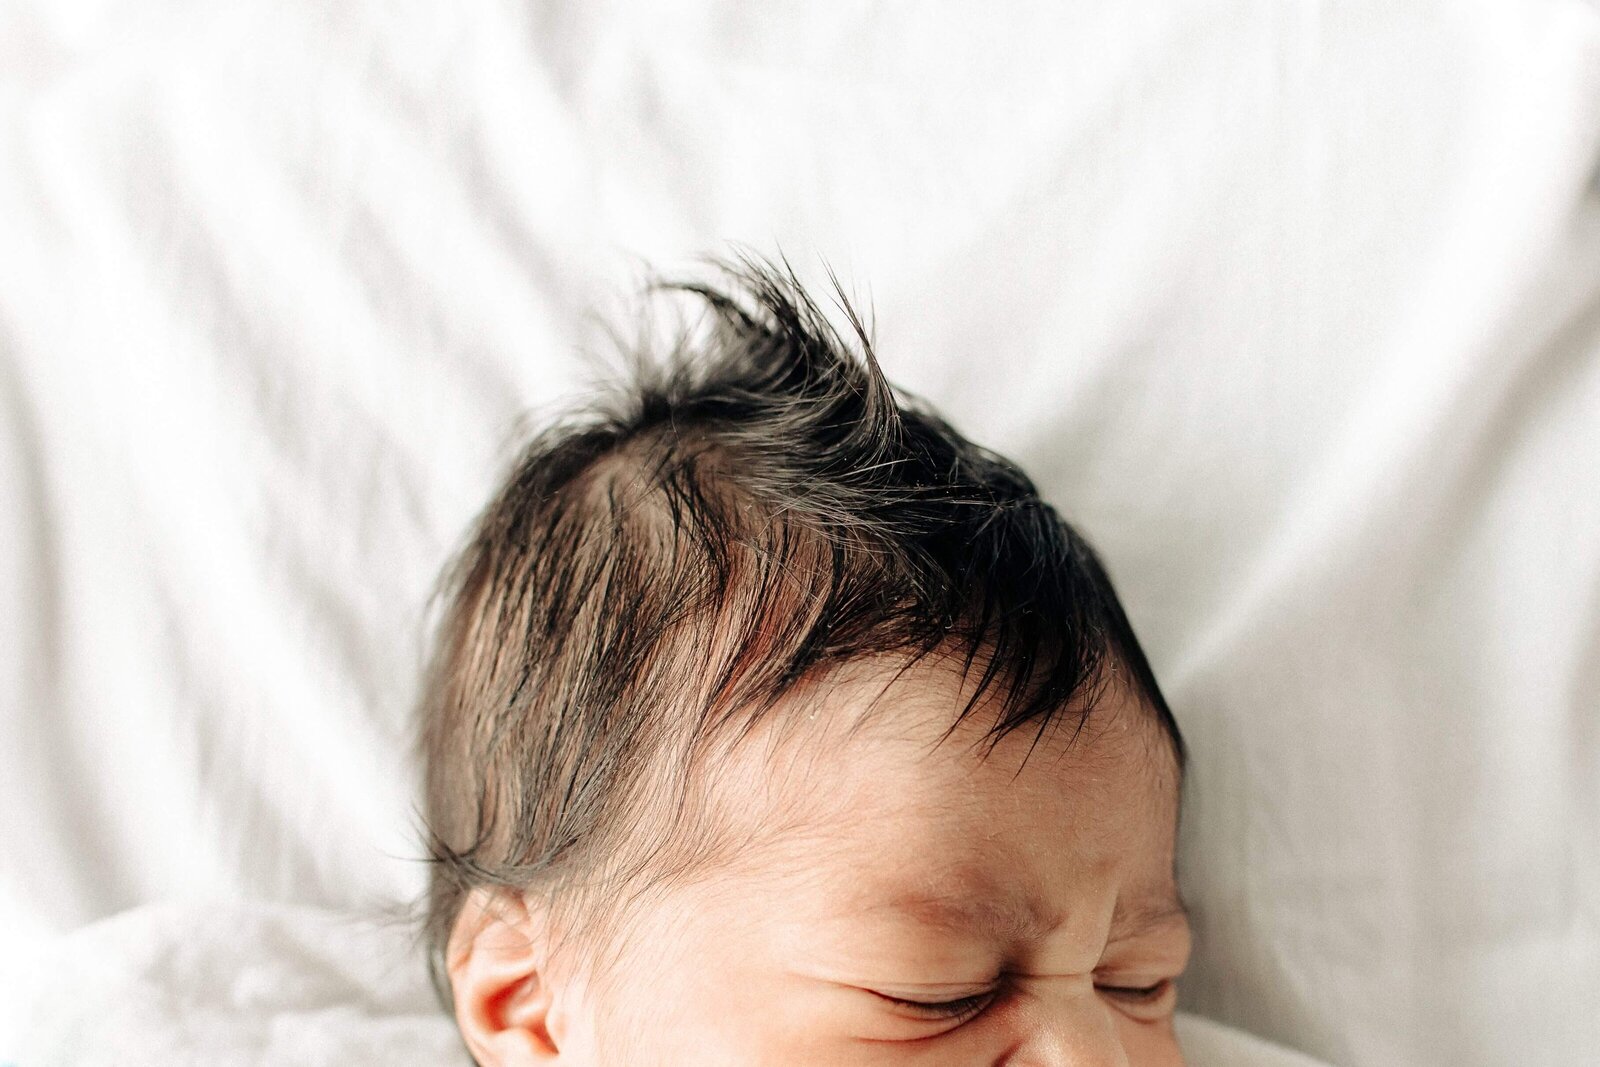 newborn hair at missouri hospital